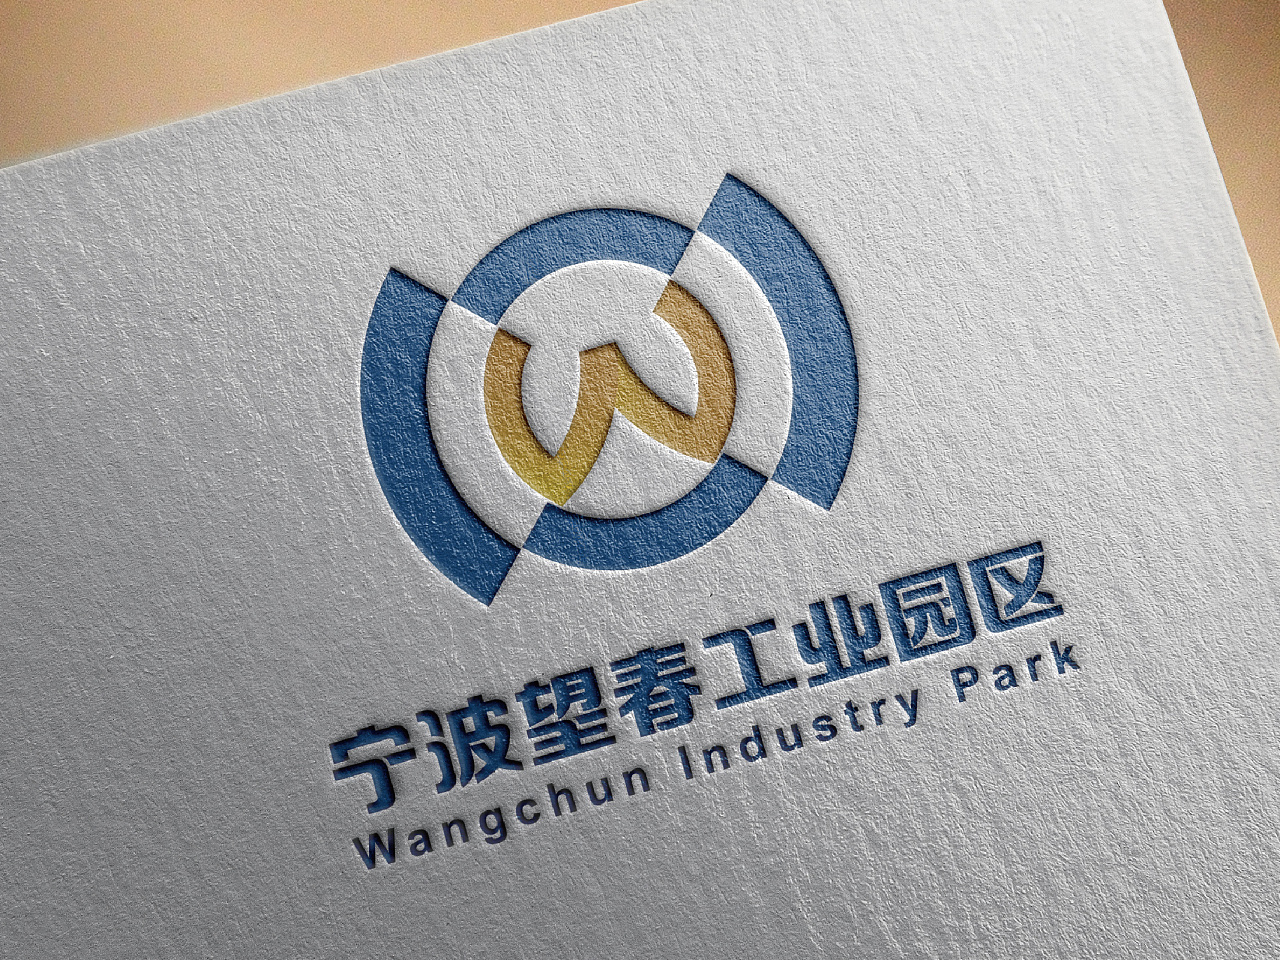 宁波望春工业园区logo设计整合方案